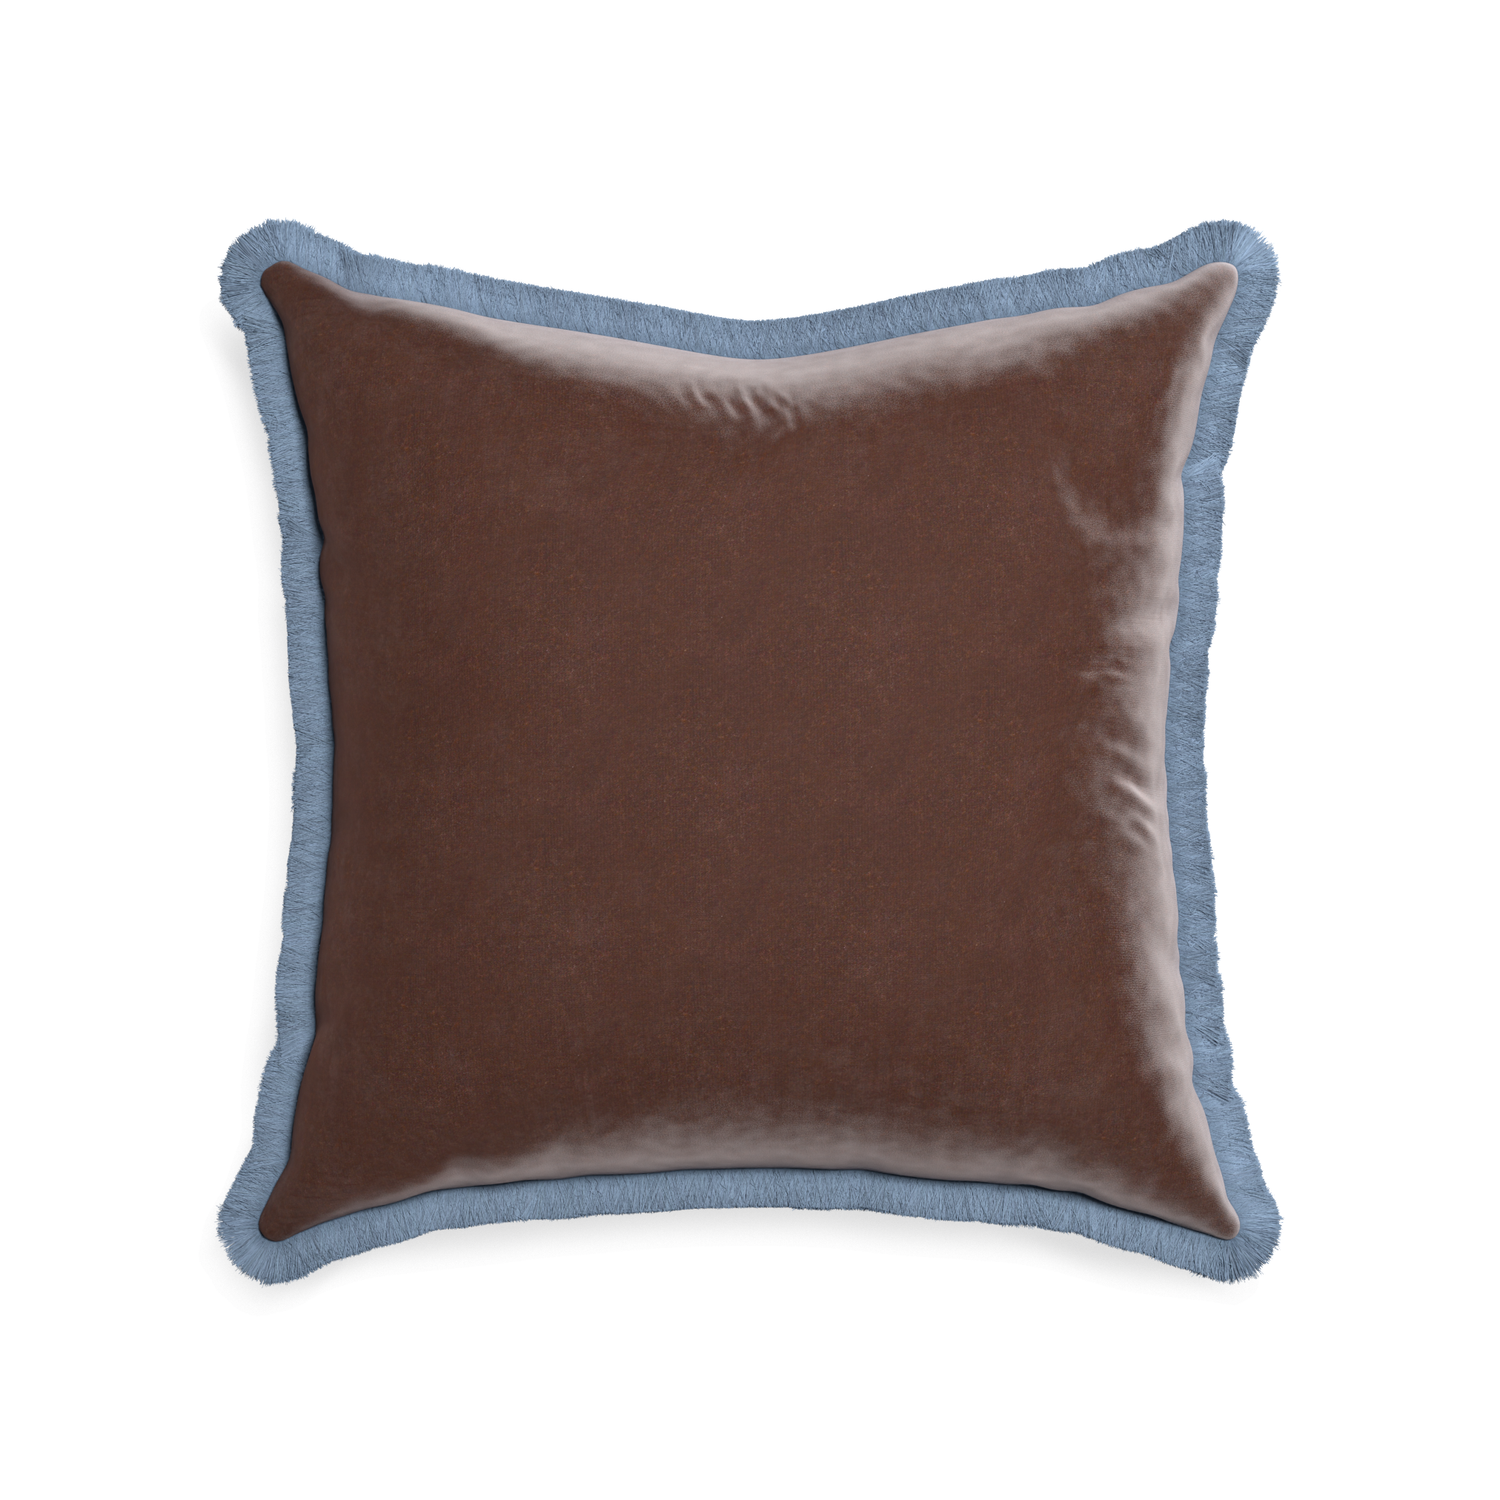 22-square walnut velvet custom pillow with sky fringe on white background